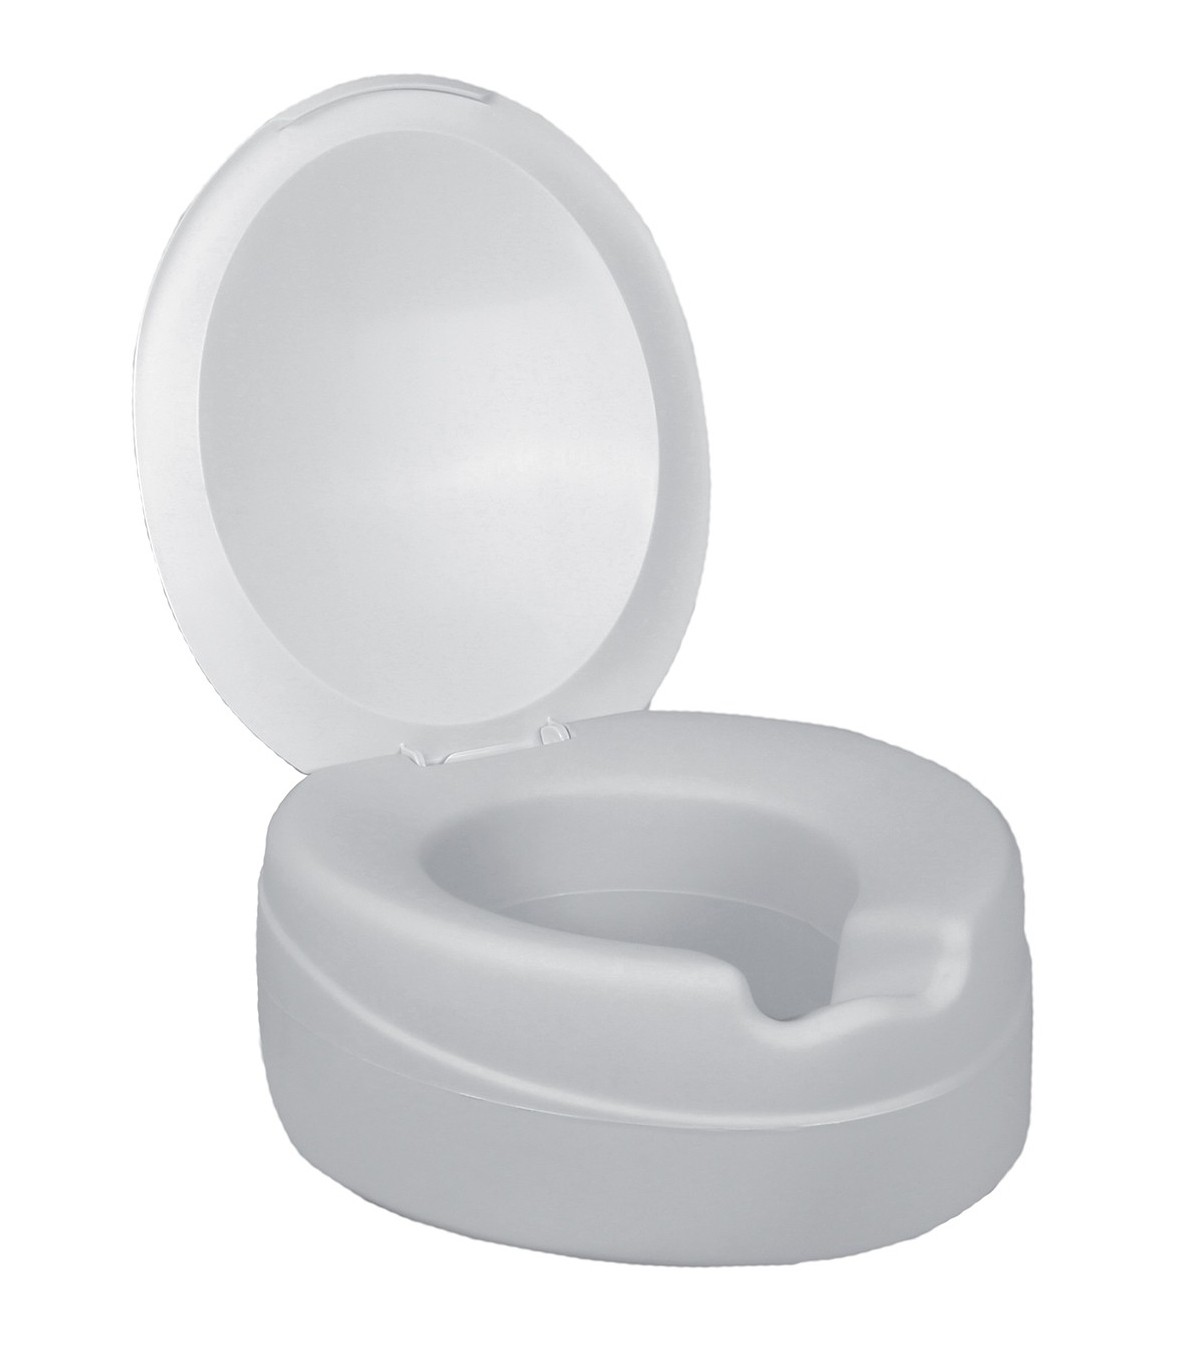 Rehausse WC Contact Plus Néo avec couvercle - Medical Domicile